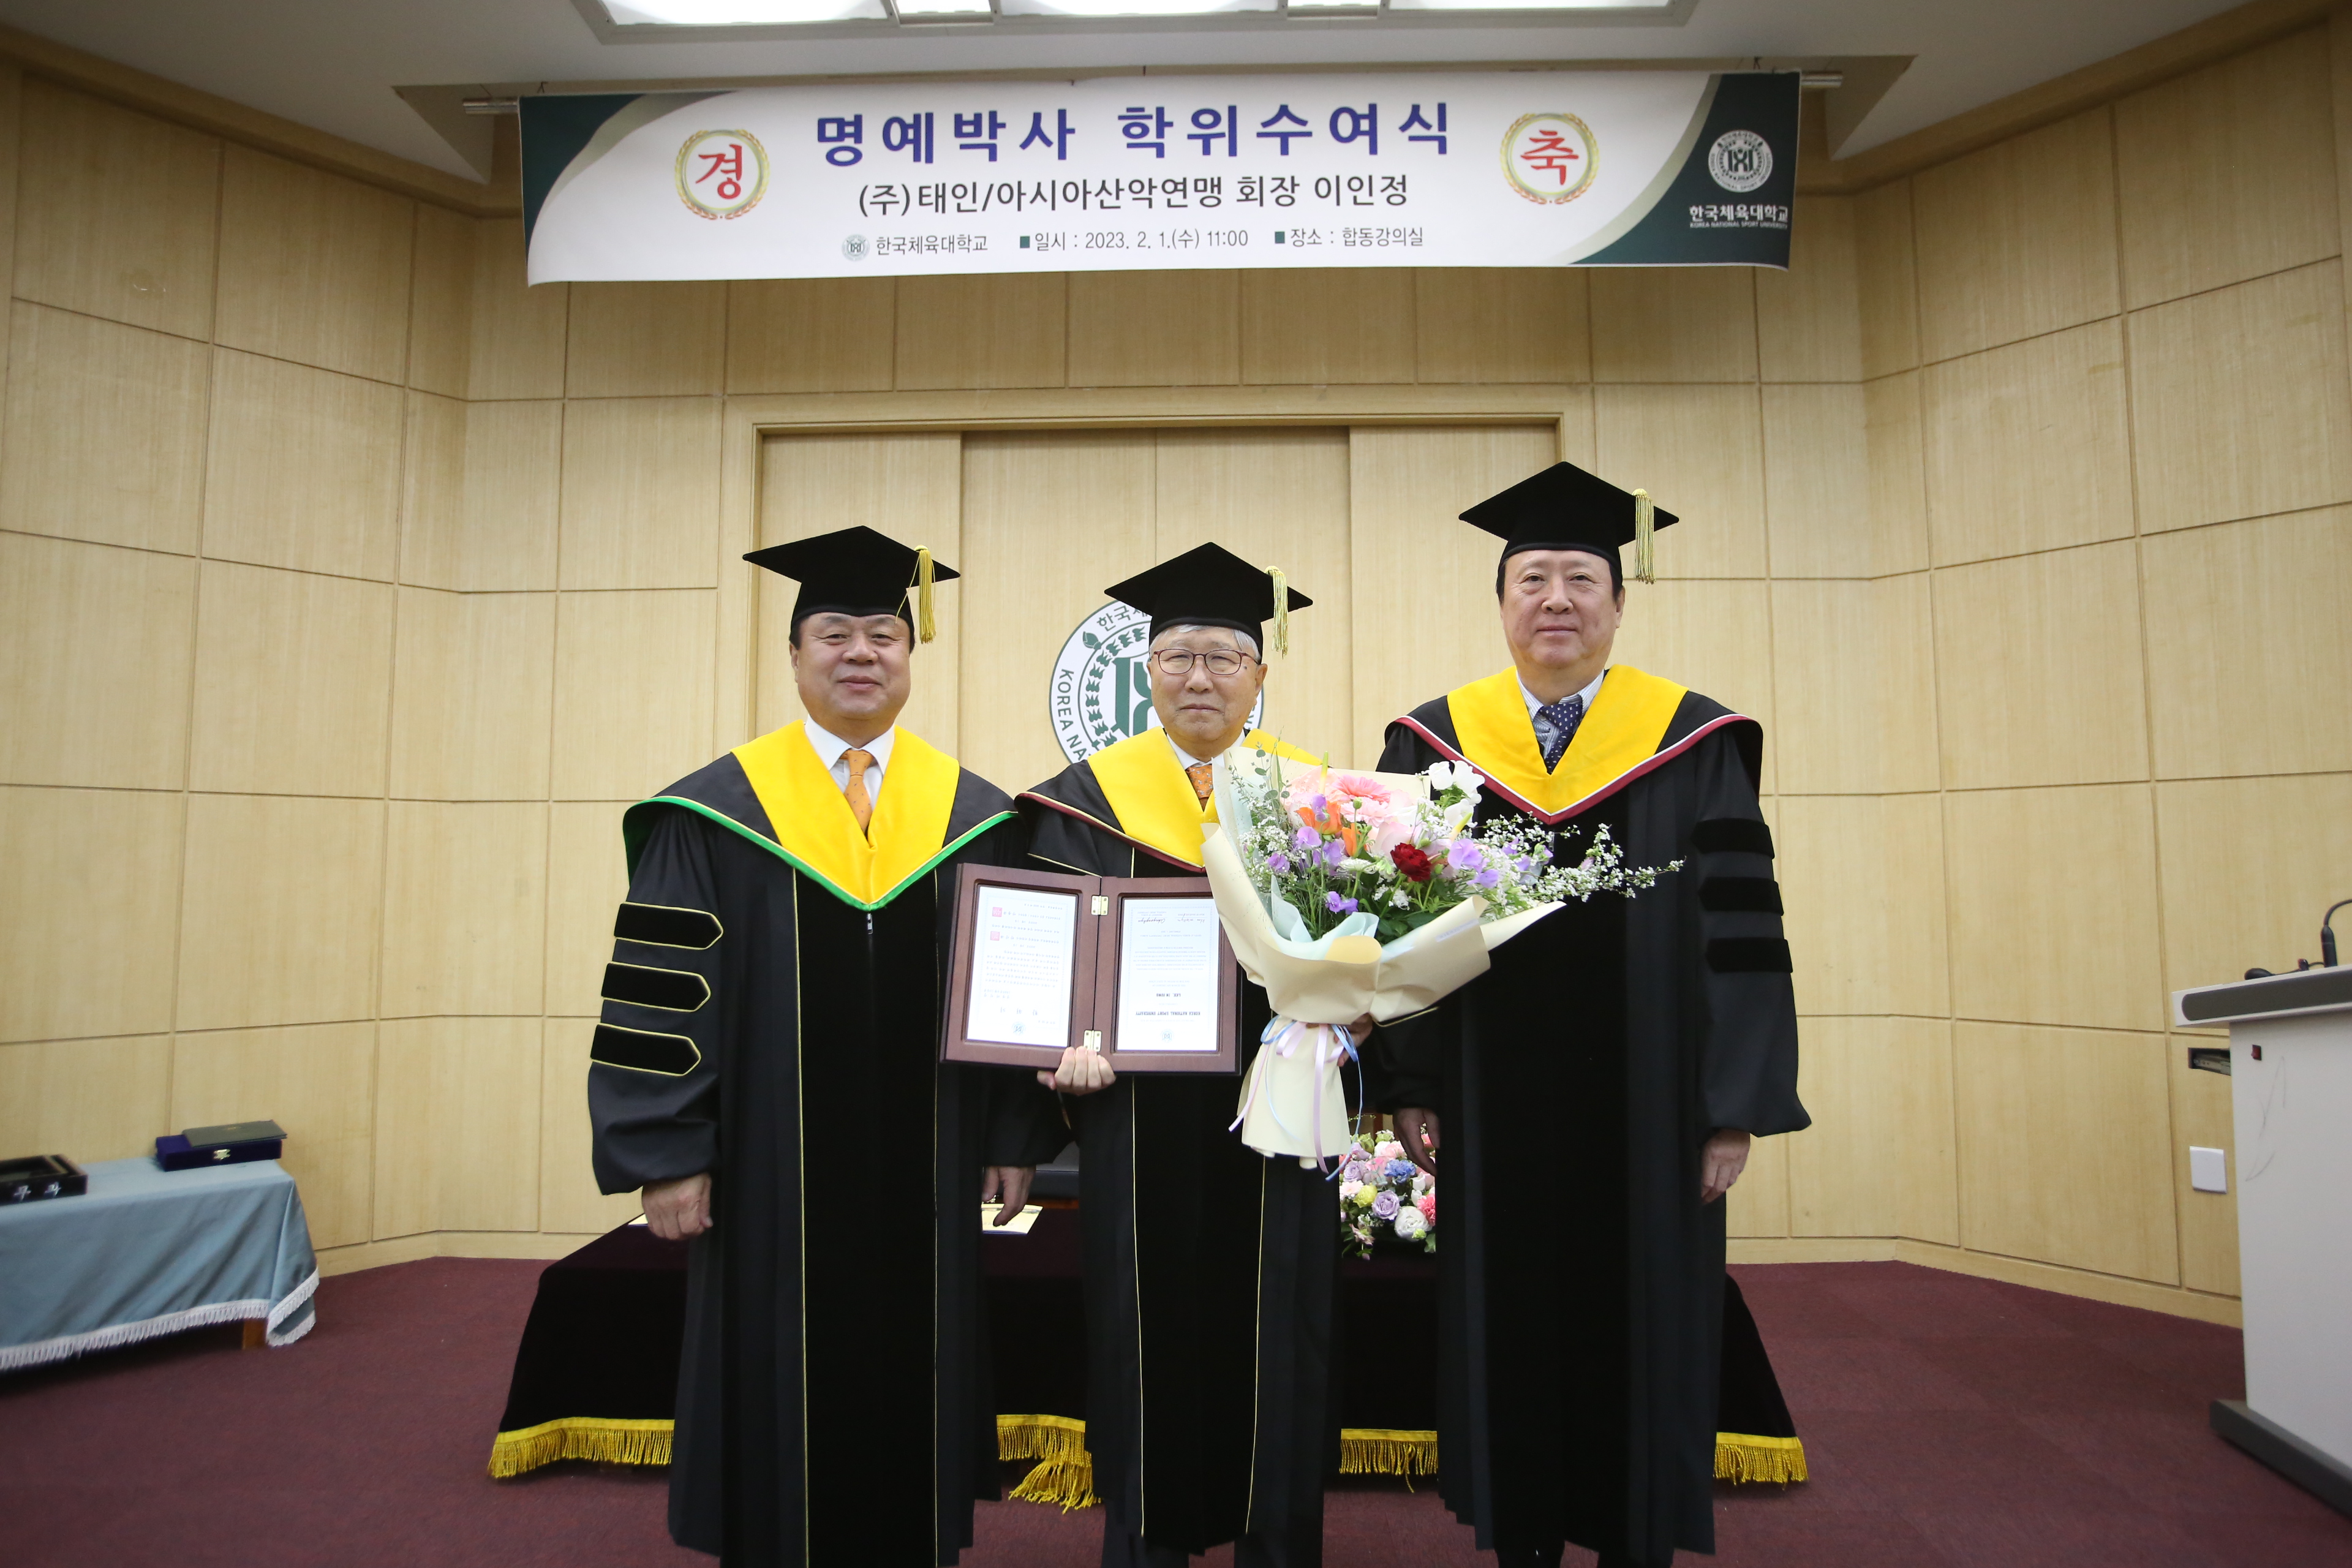 이인정(가운데) 한국체육대학교 체육학 명예박사 학위 수여식